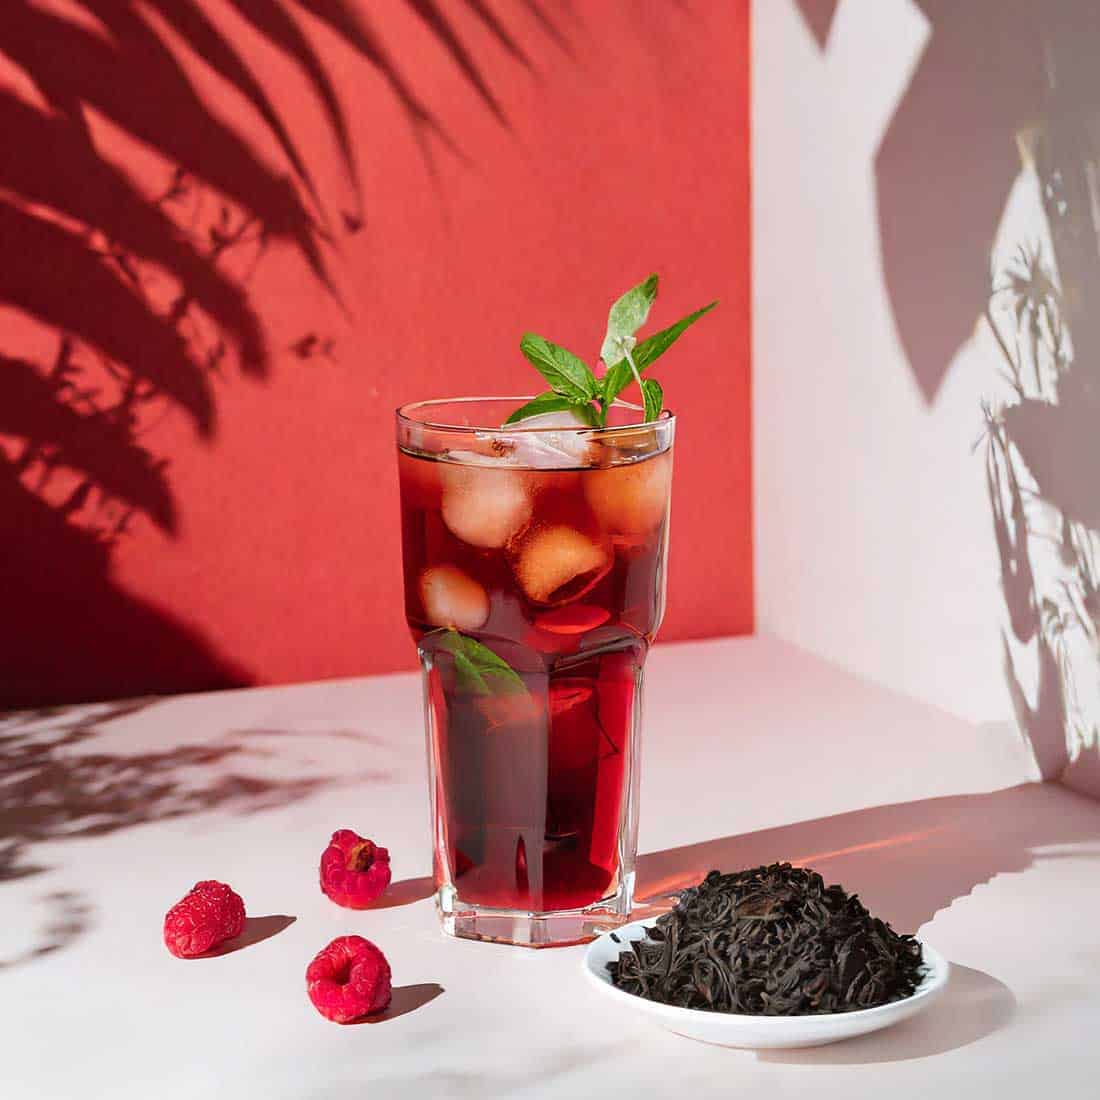 Tucson Tea Company's Black Raspberry loose-leaf tea